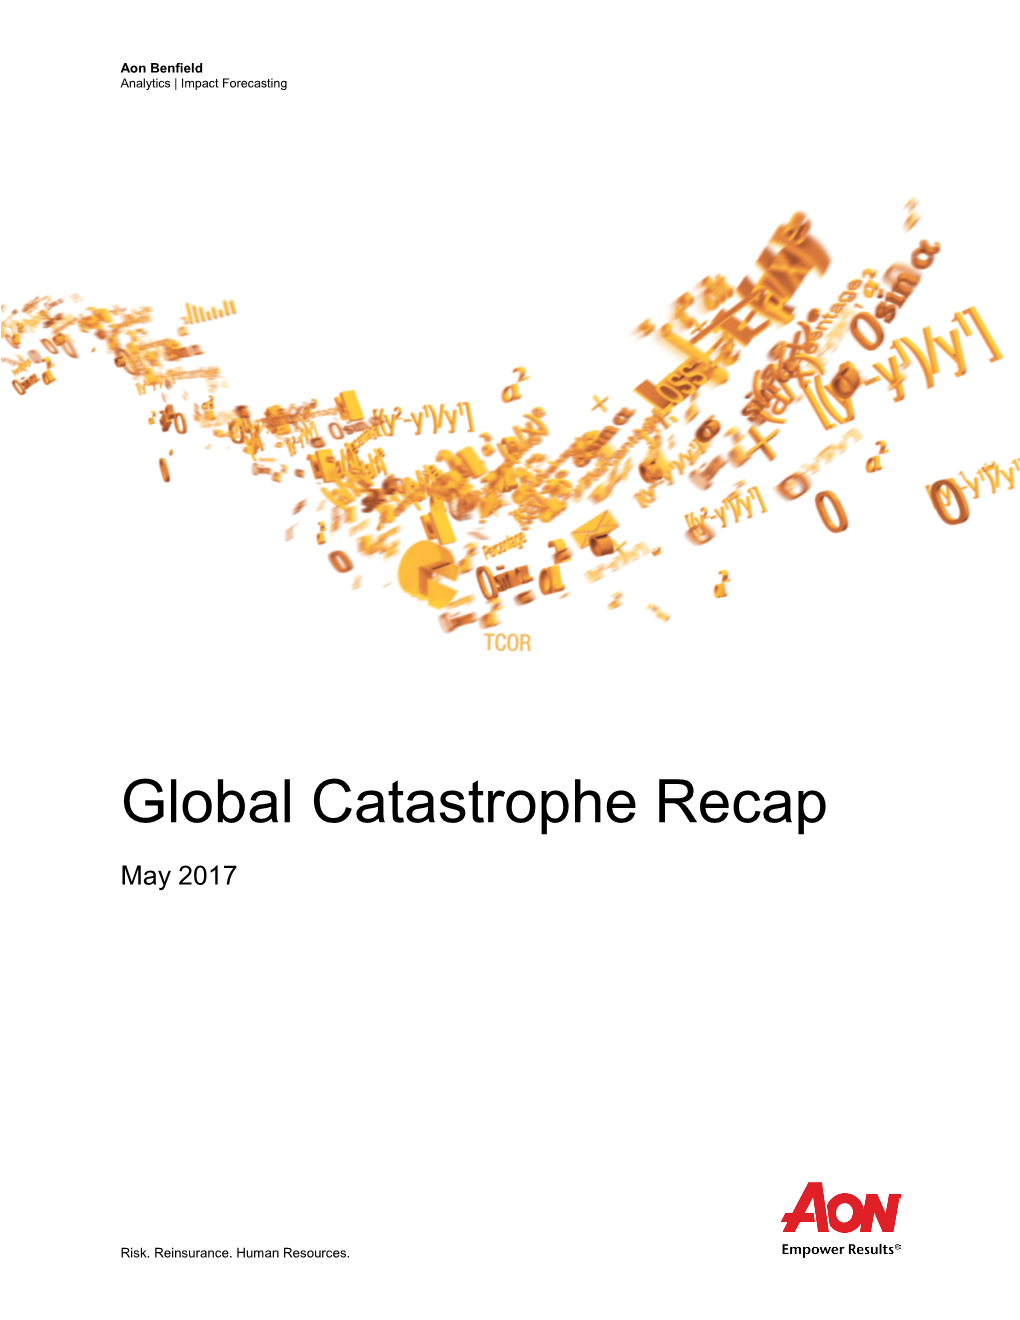 Global Catastrophe Recap May 2017